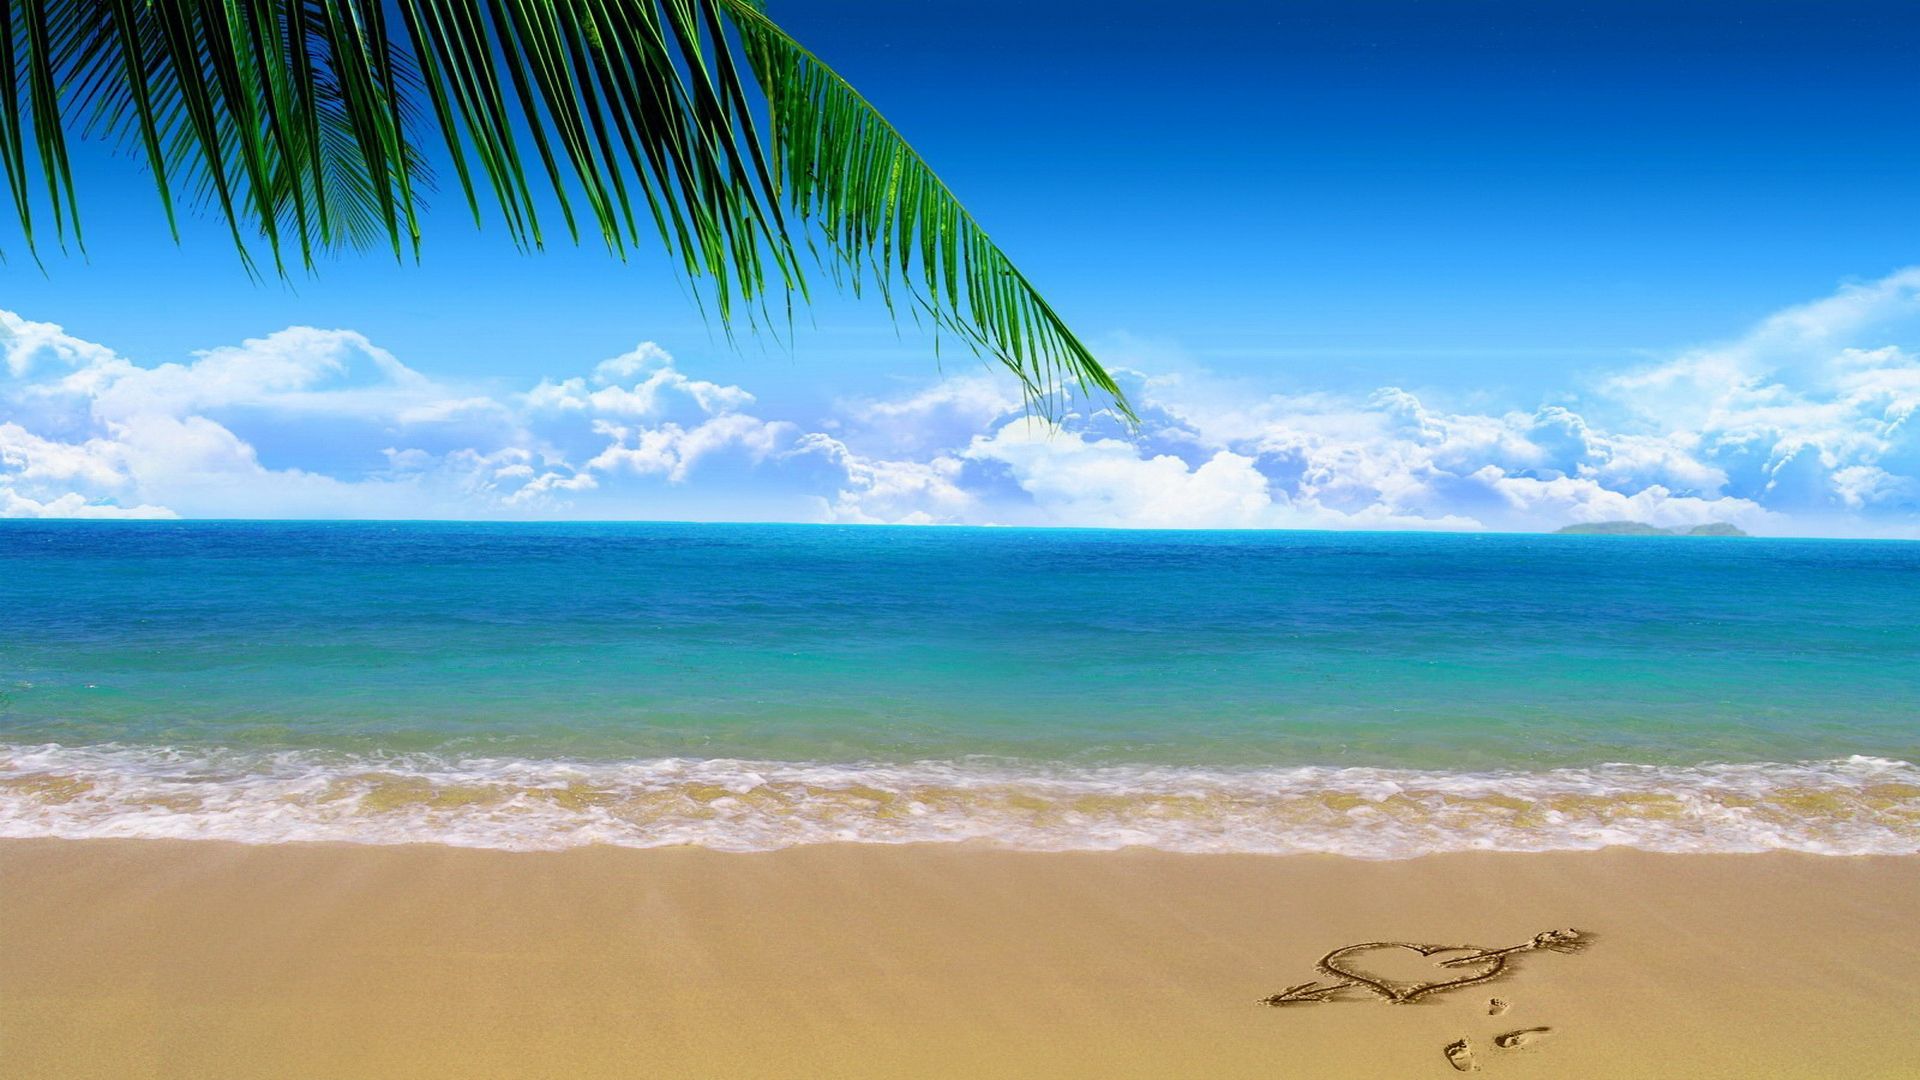 Background Biển- Beach Đẹp, Chất Lượng Cao, Full Hd